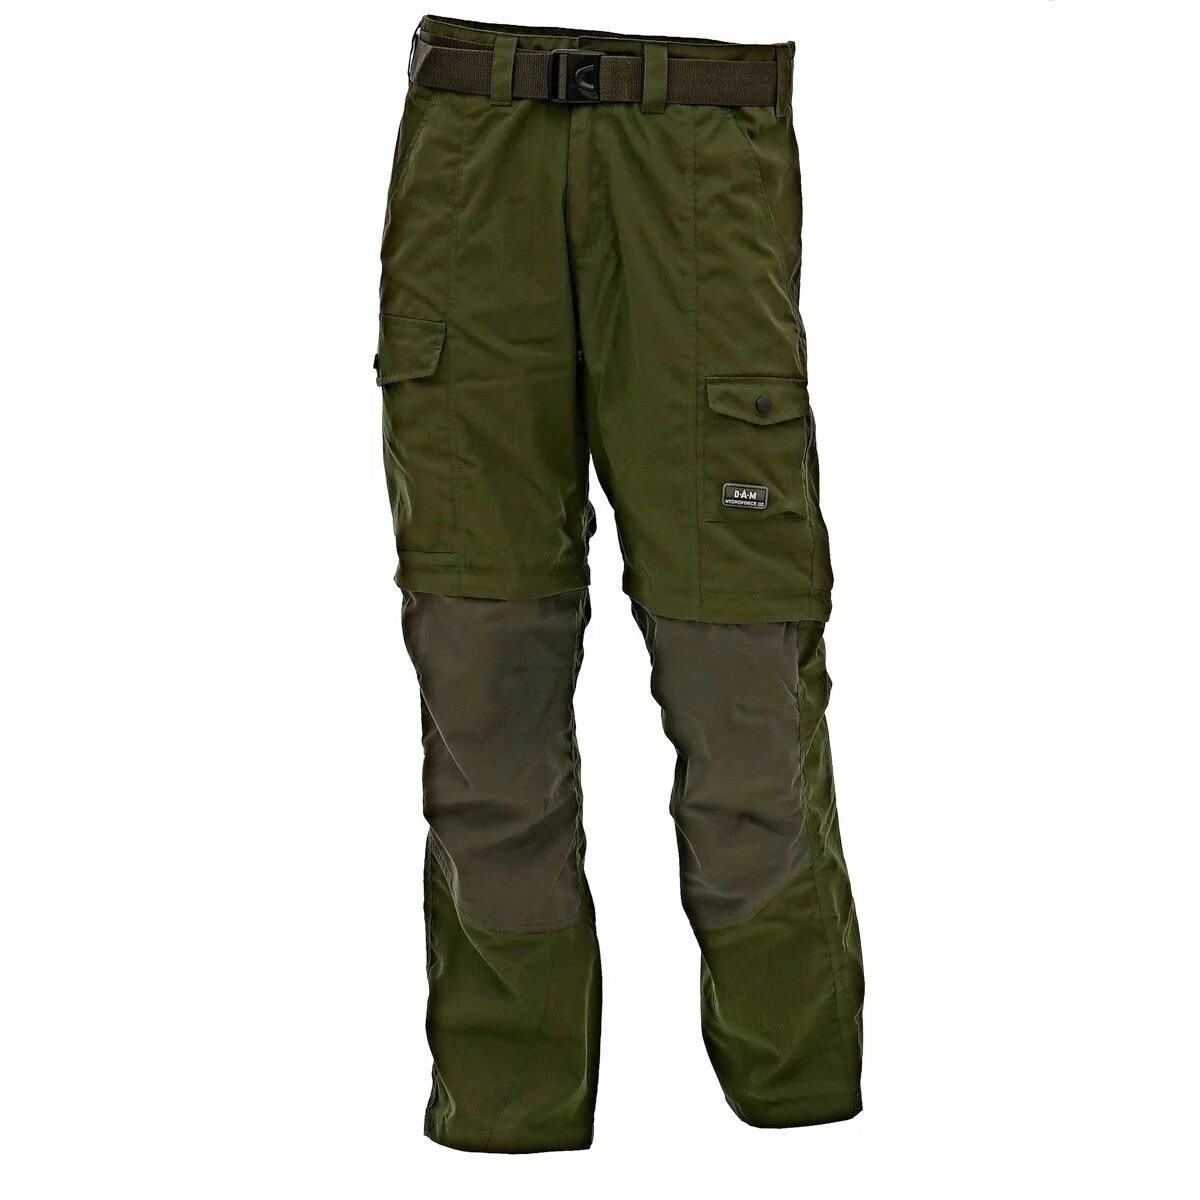 Штаны Combat g2. Брюки dam Camovision. Рыбацкие штаны. Болотные брюки для рыбалки. Купить штаны для рыбалки